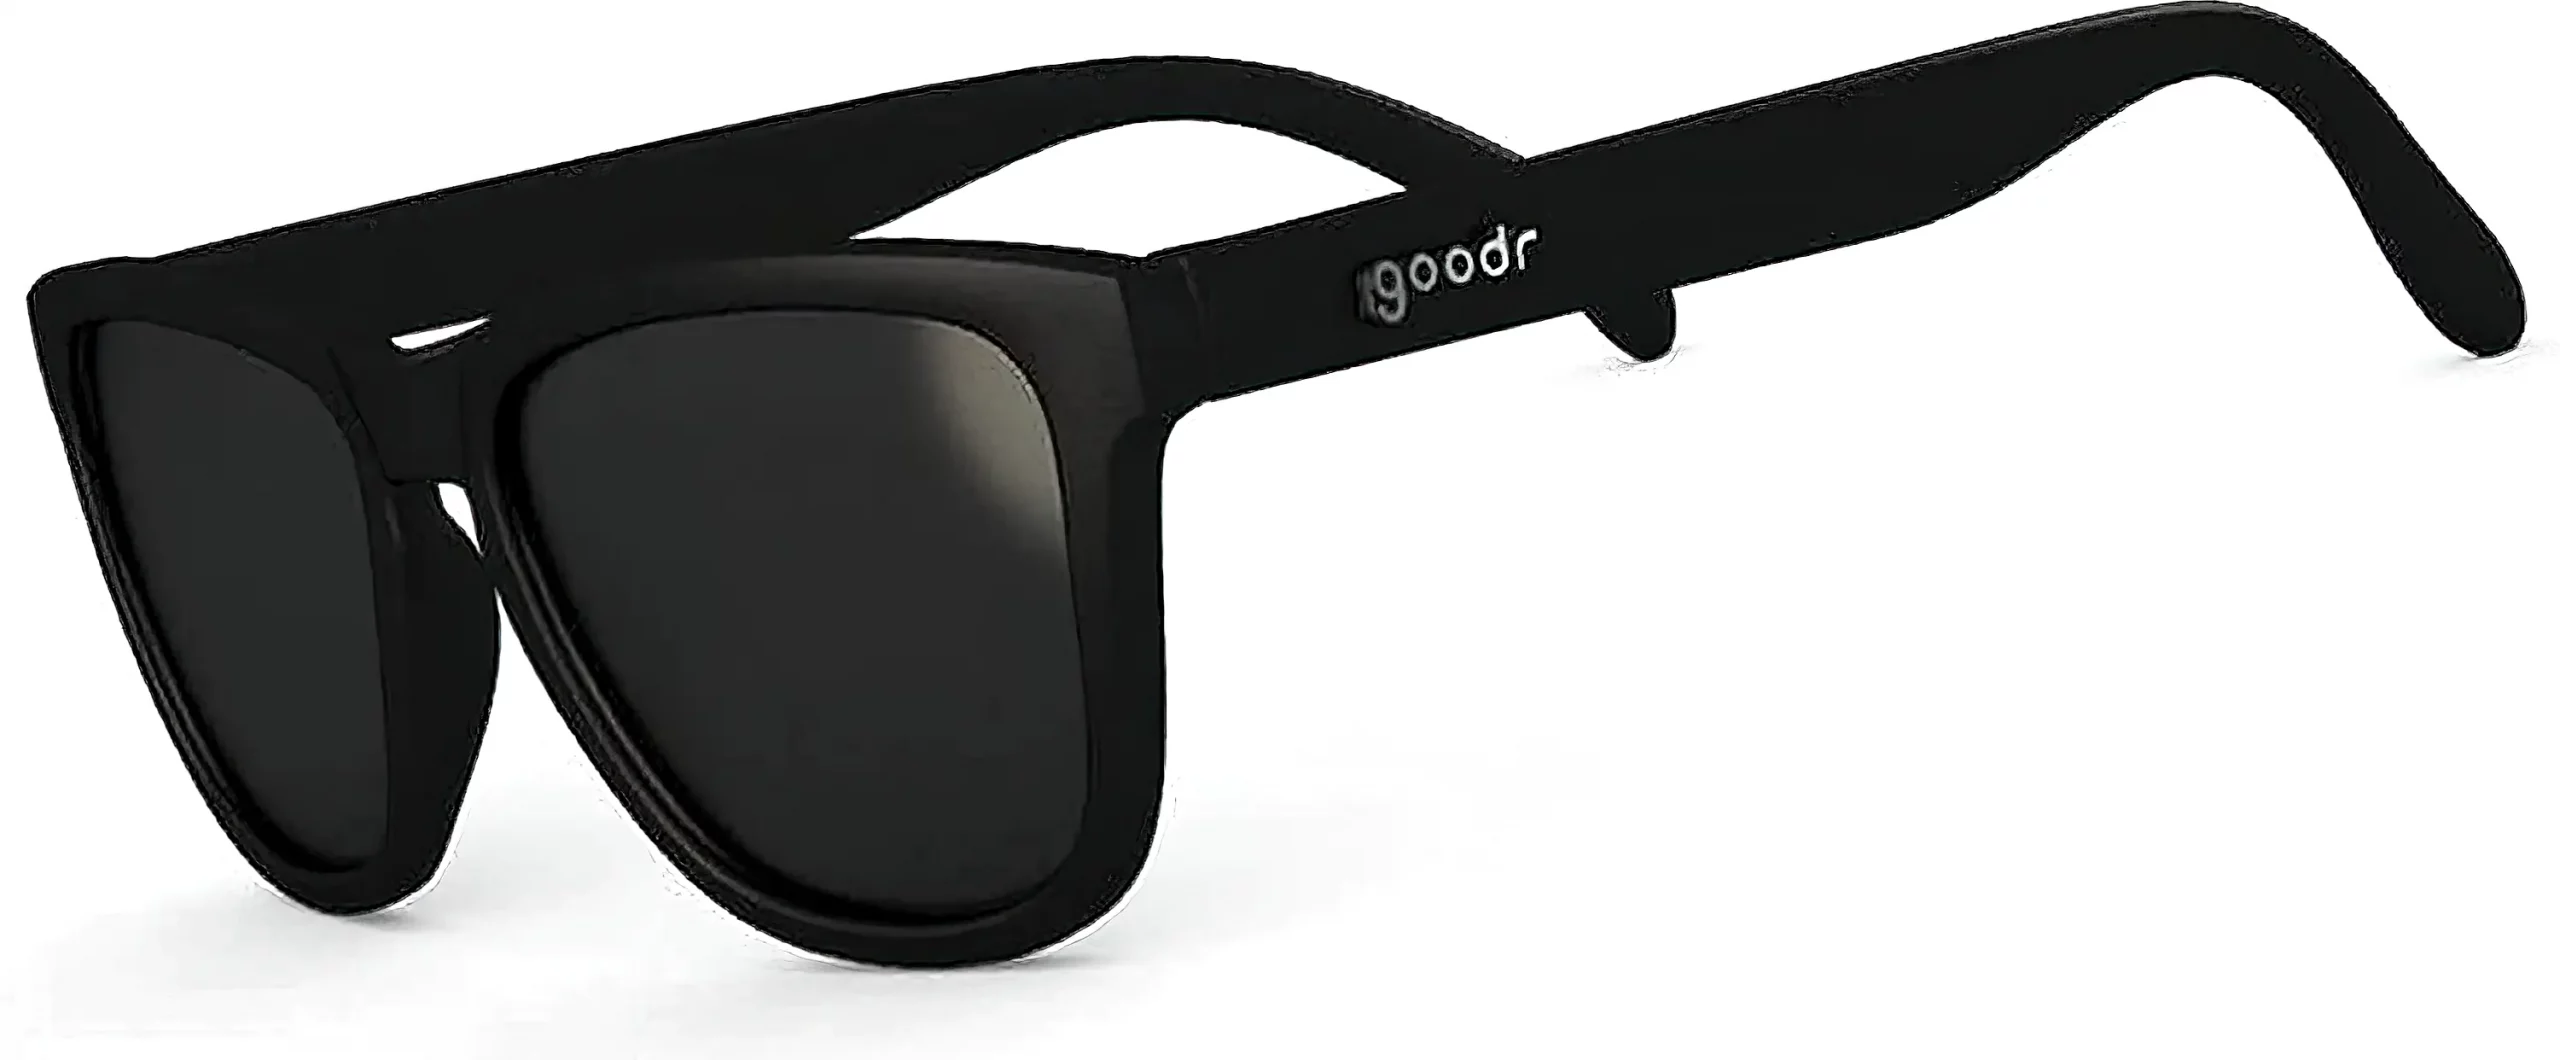 goodr running sunglasses black with black lens